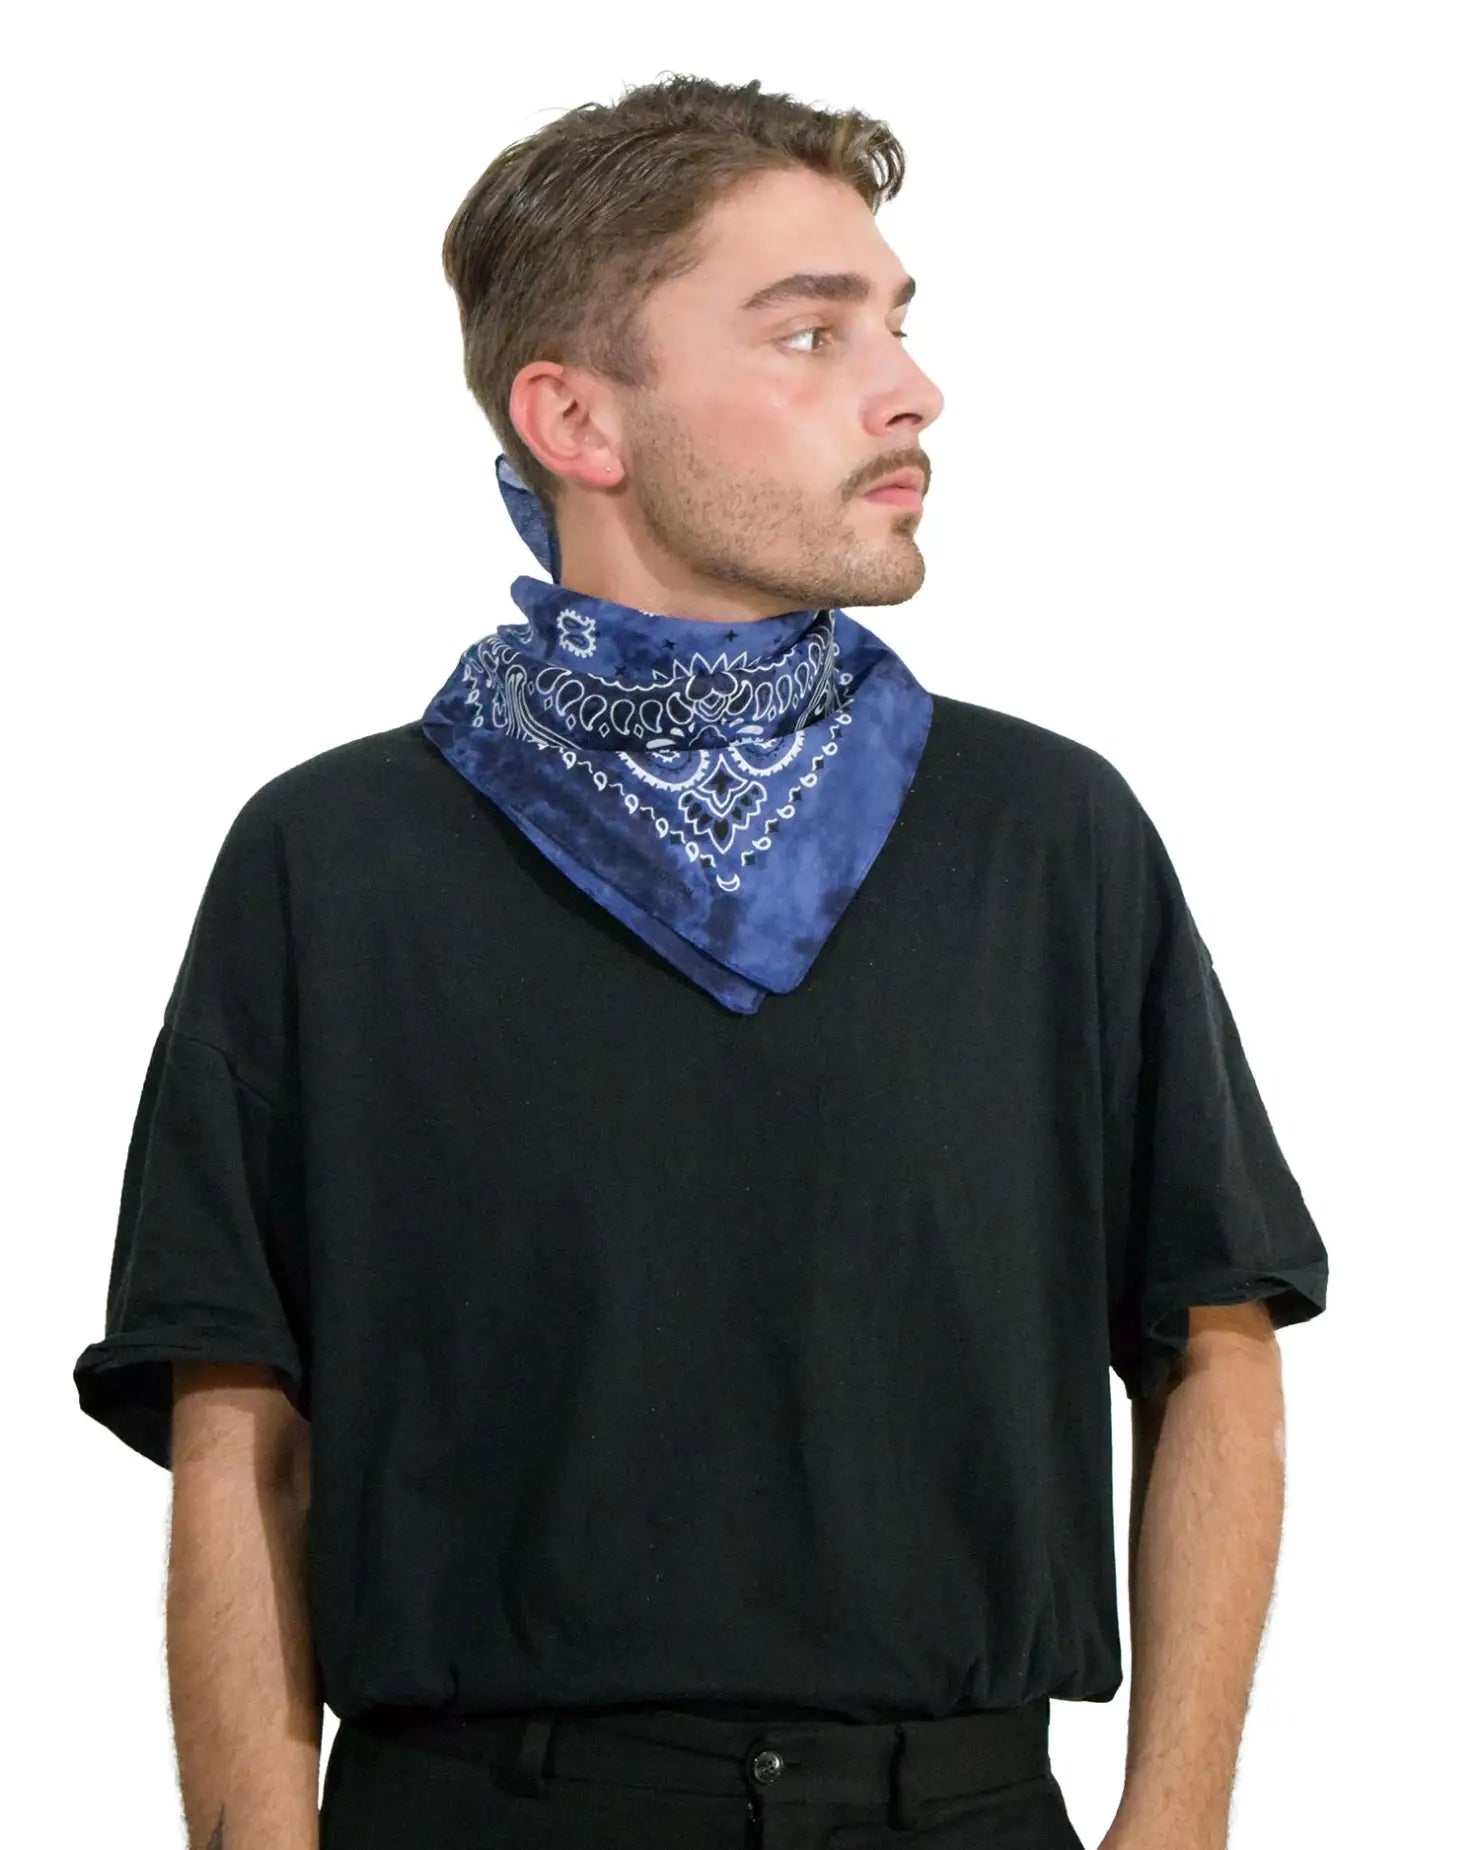 Tie Dye Paisley Print Square Bandana in 100% Cotton - Blue bandana on a person